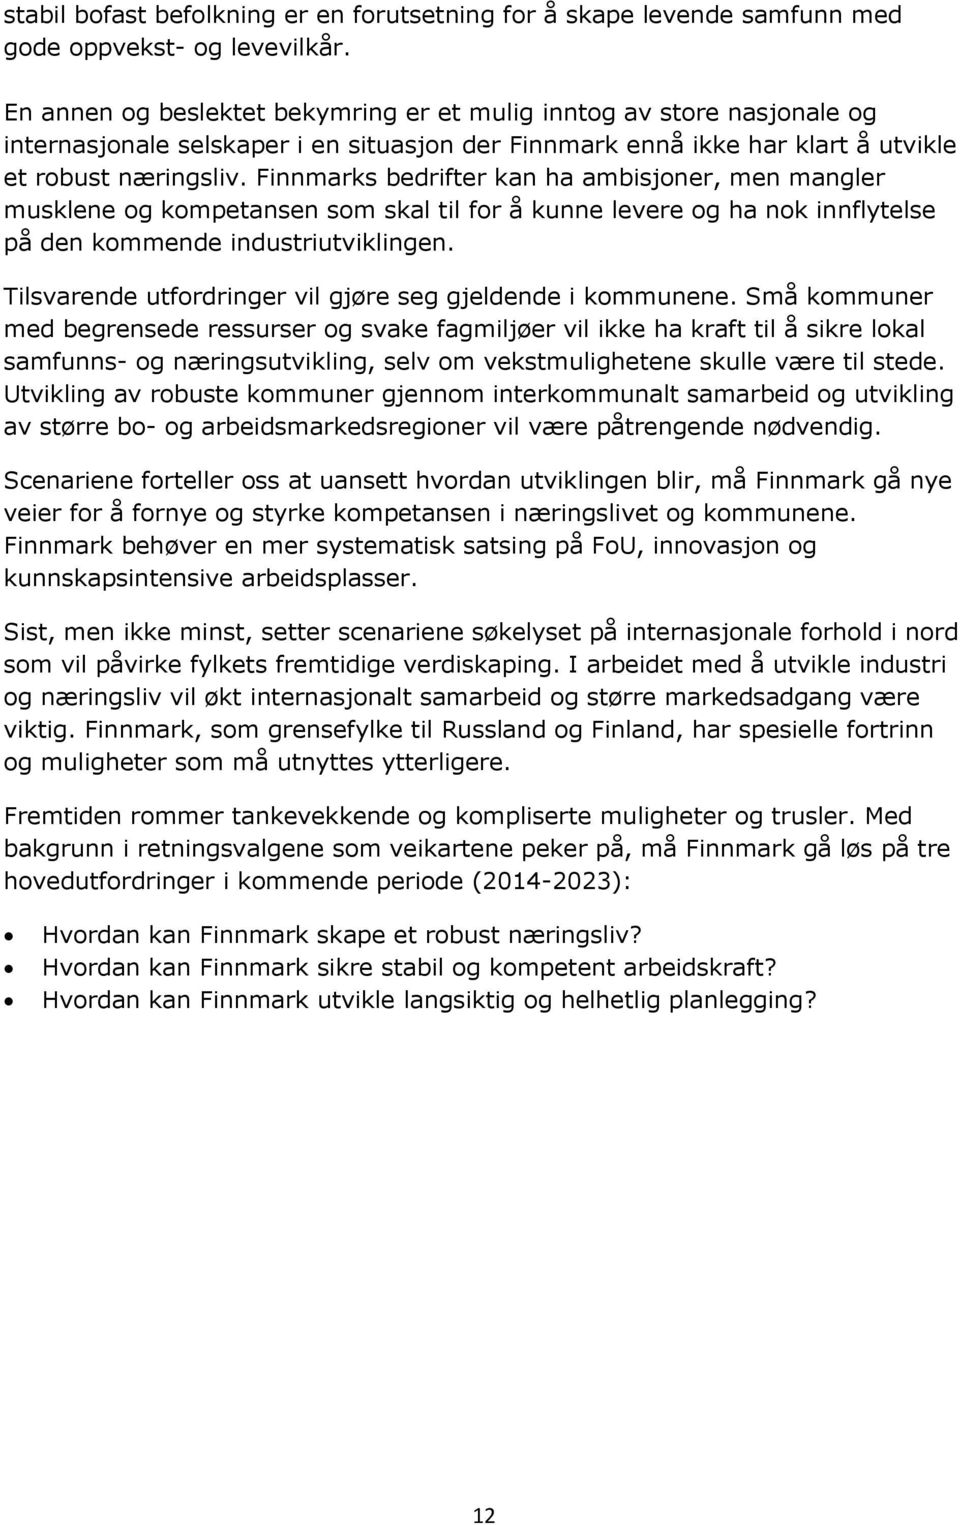 Finnmarks bedrifter kan ha ambisjoner, men mangler musklene og kompetansen som skal til for å kunne levere og ha nok innflytelse på den kommende industriutviklingen.